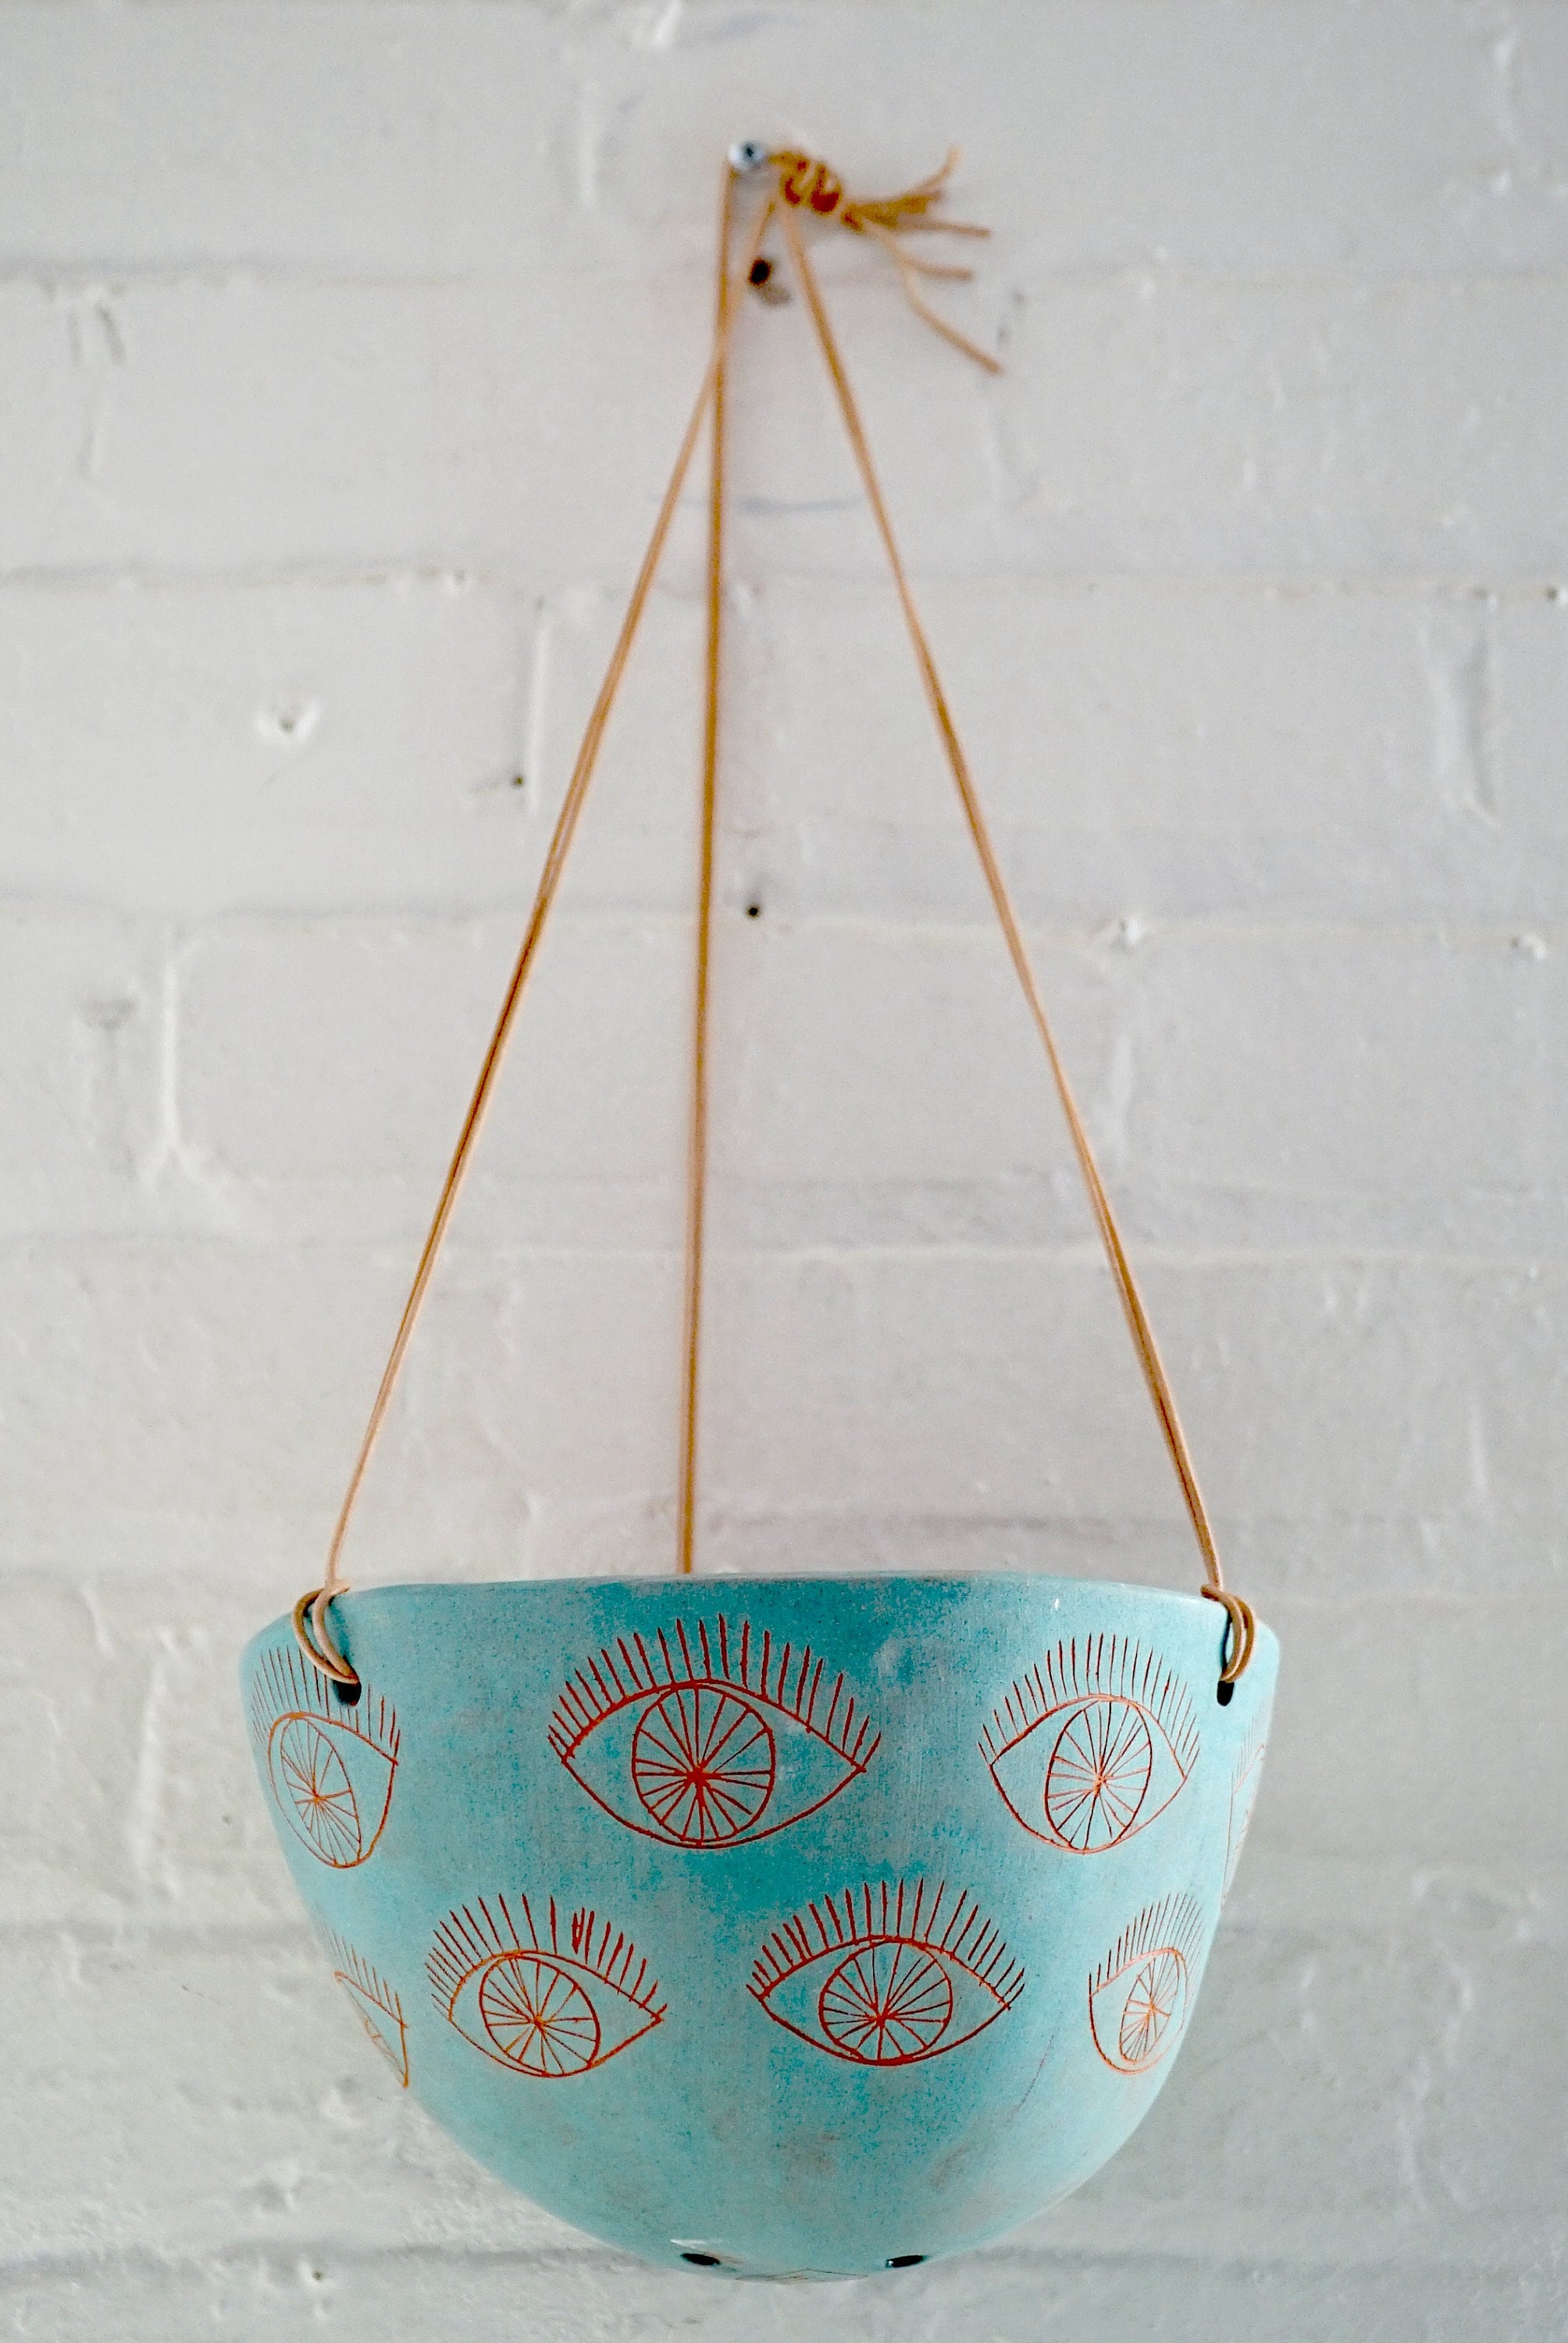 Large Aqua & Terracotta Hanging Planter w/ Hand-Carved "Eye" Design - Plant Hanger - Hanging Basket - Indoor Garden